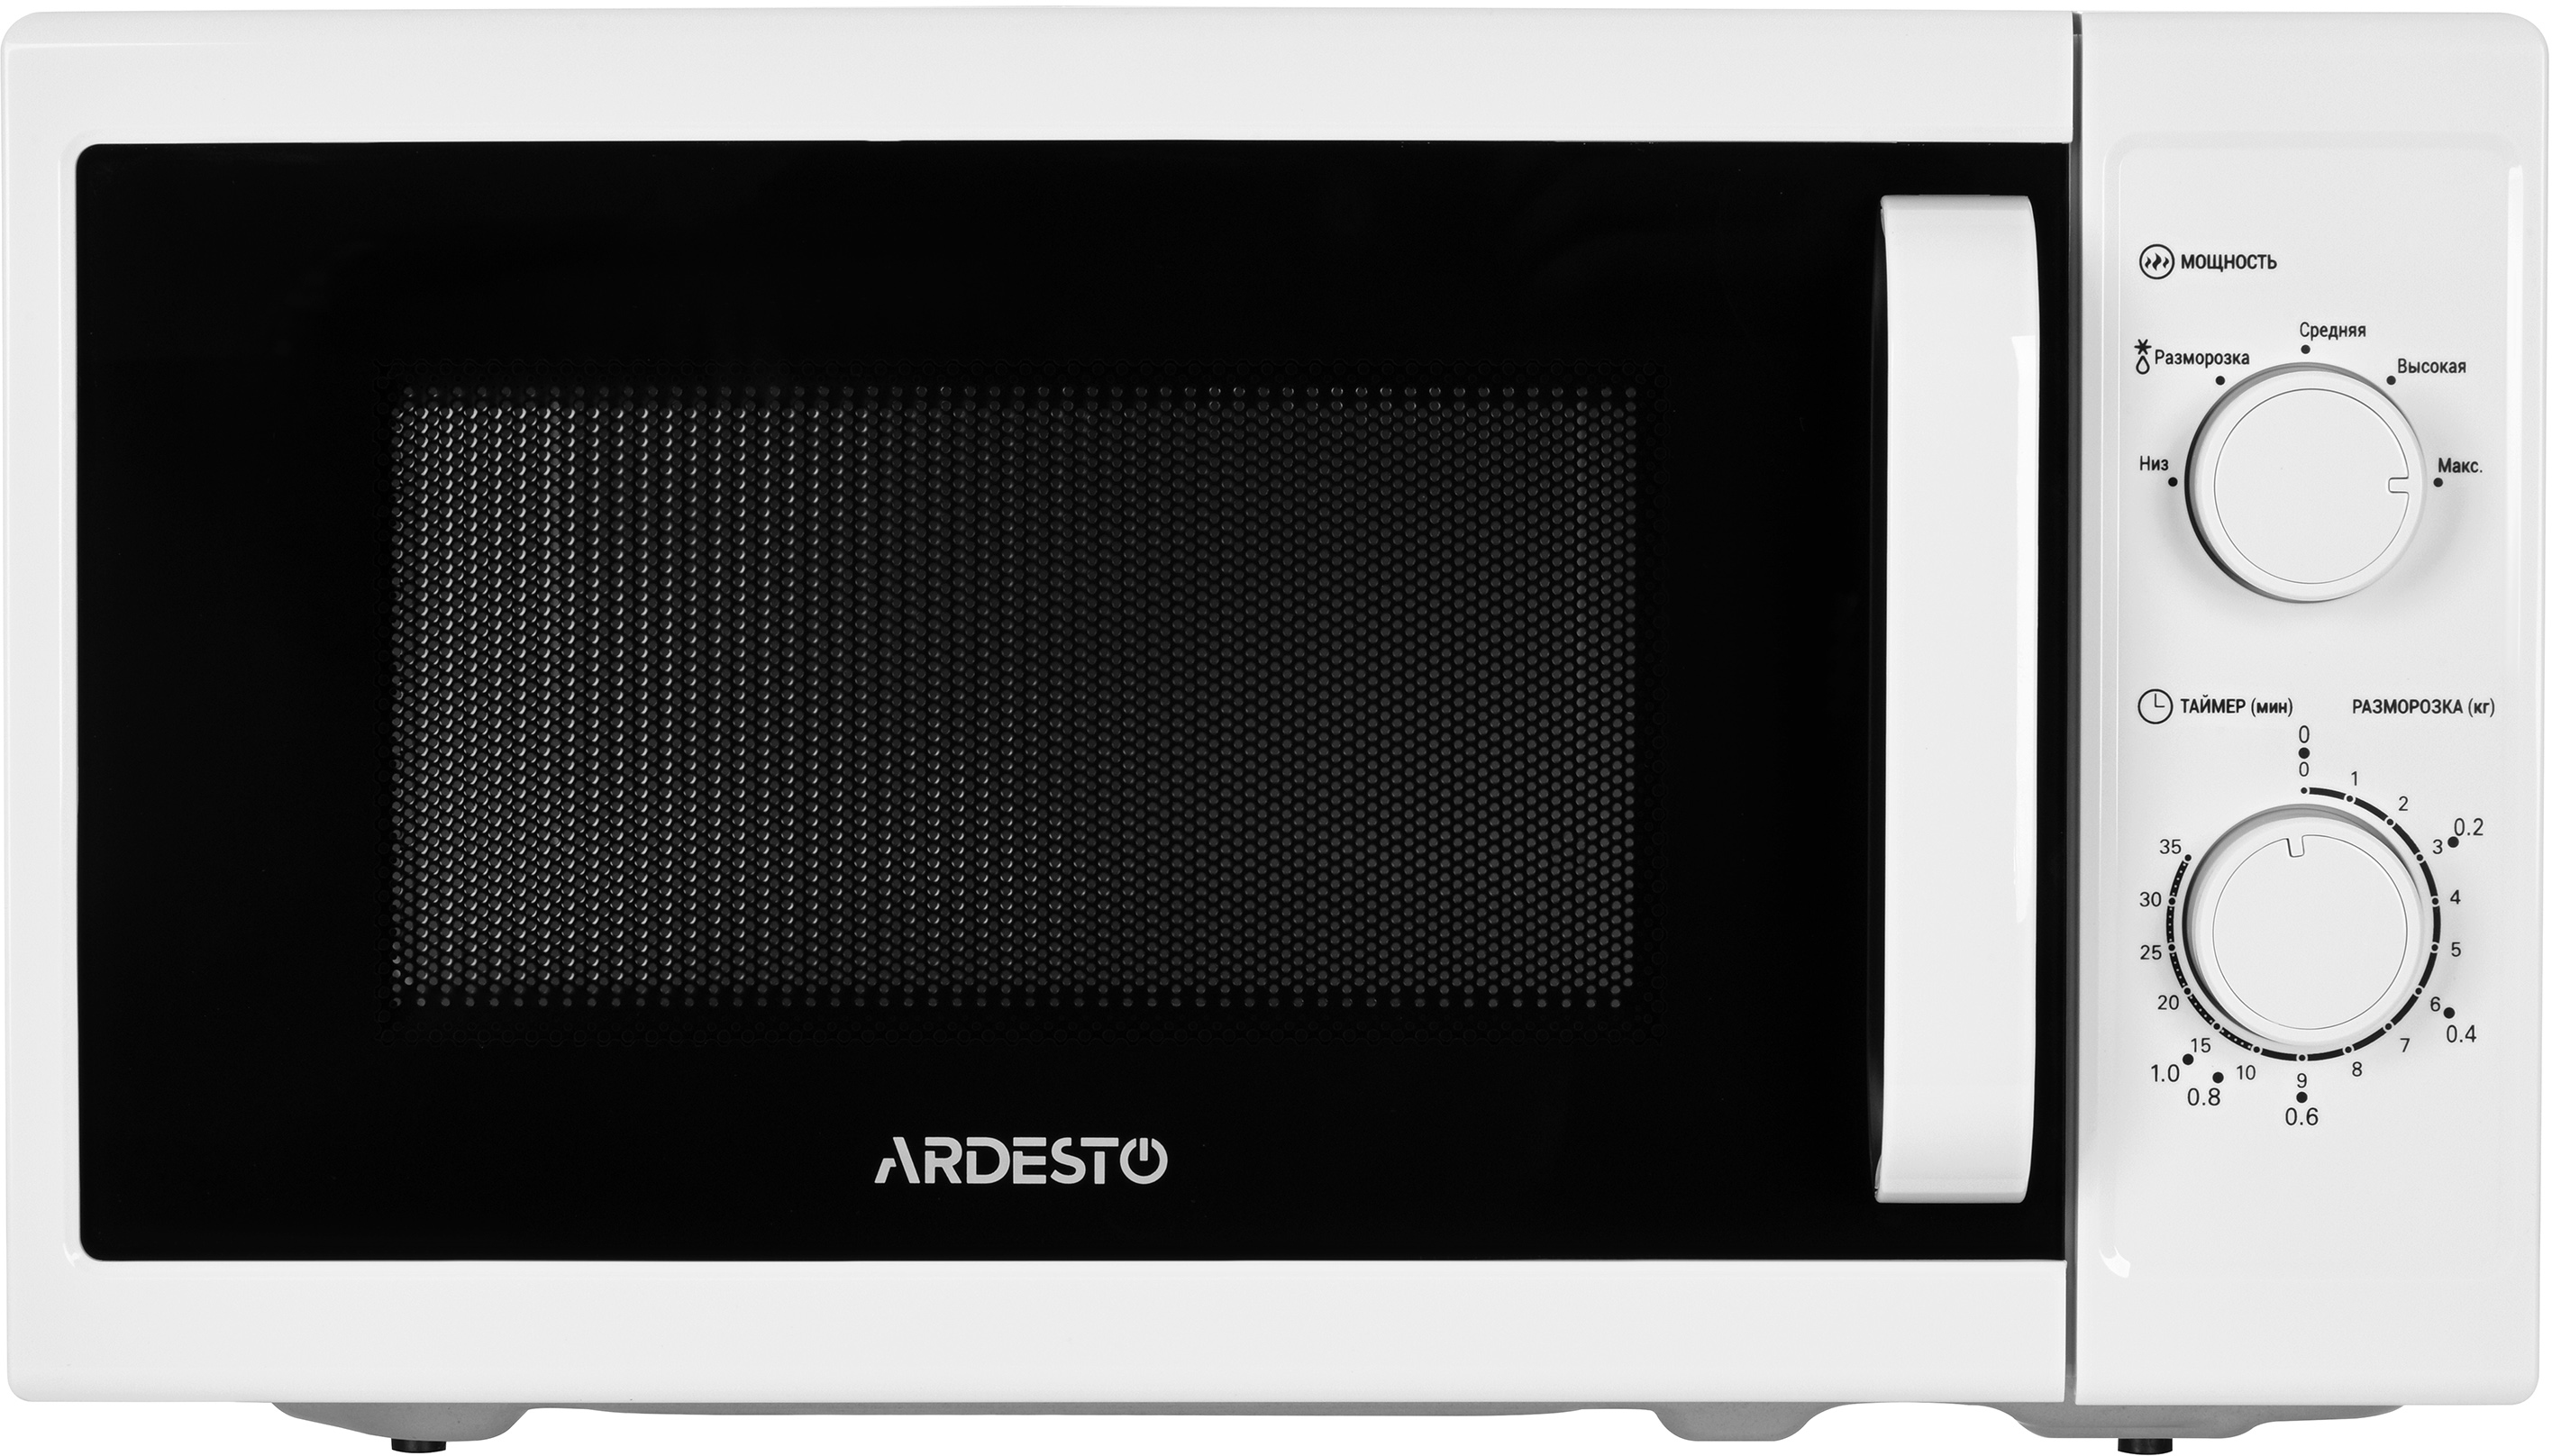 Микроволновая печь Ardesto MO-S720W цена 0.00 грн - фотография 2